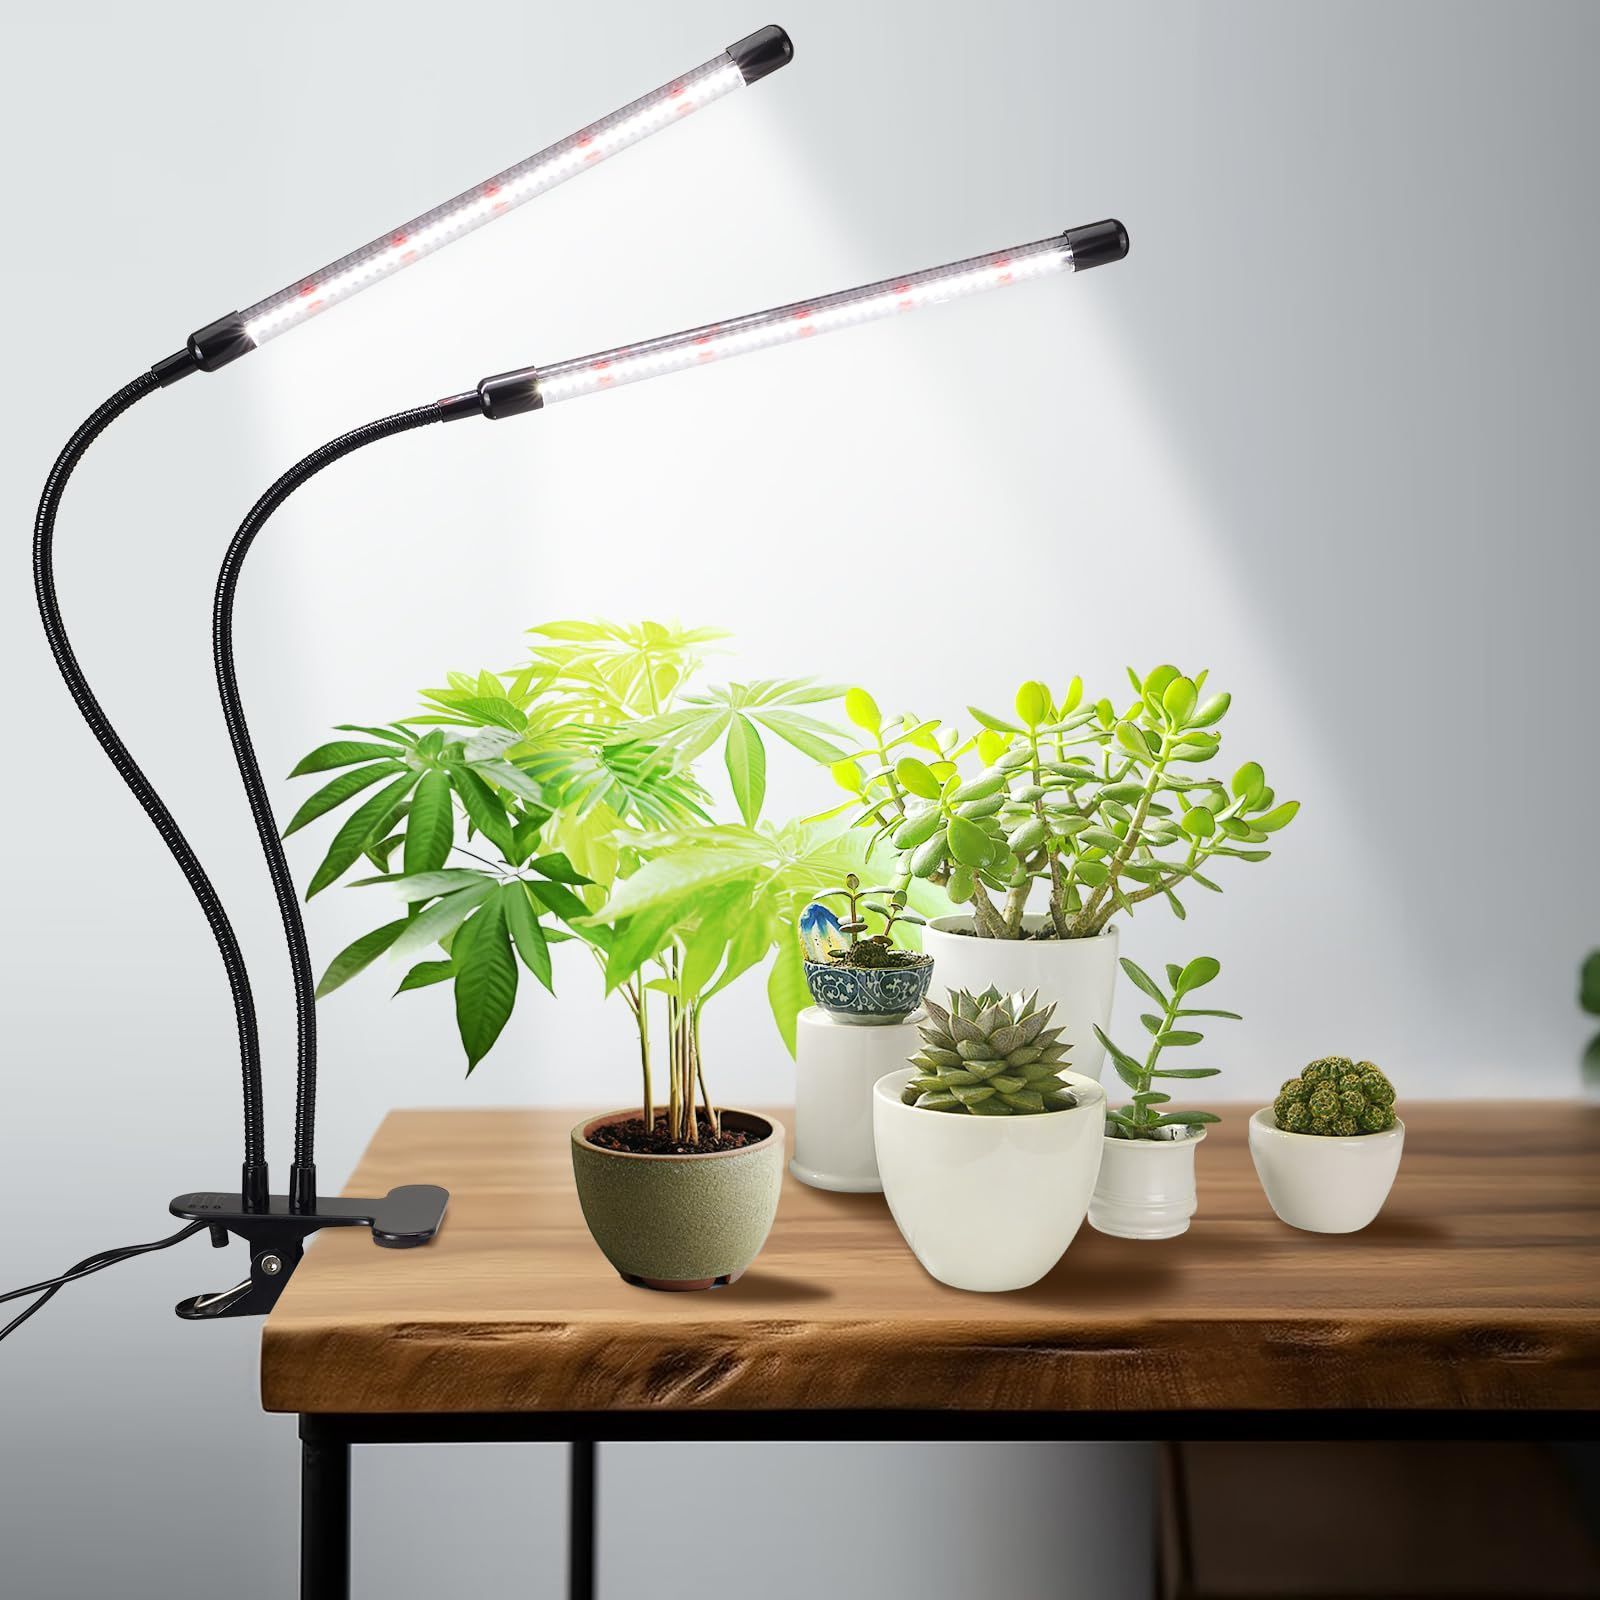 ご覧頂きありがとうございますLED植物成長ライト 自動スイッチタイミング機能